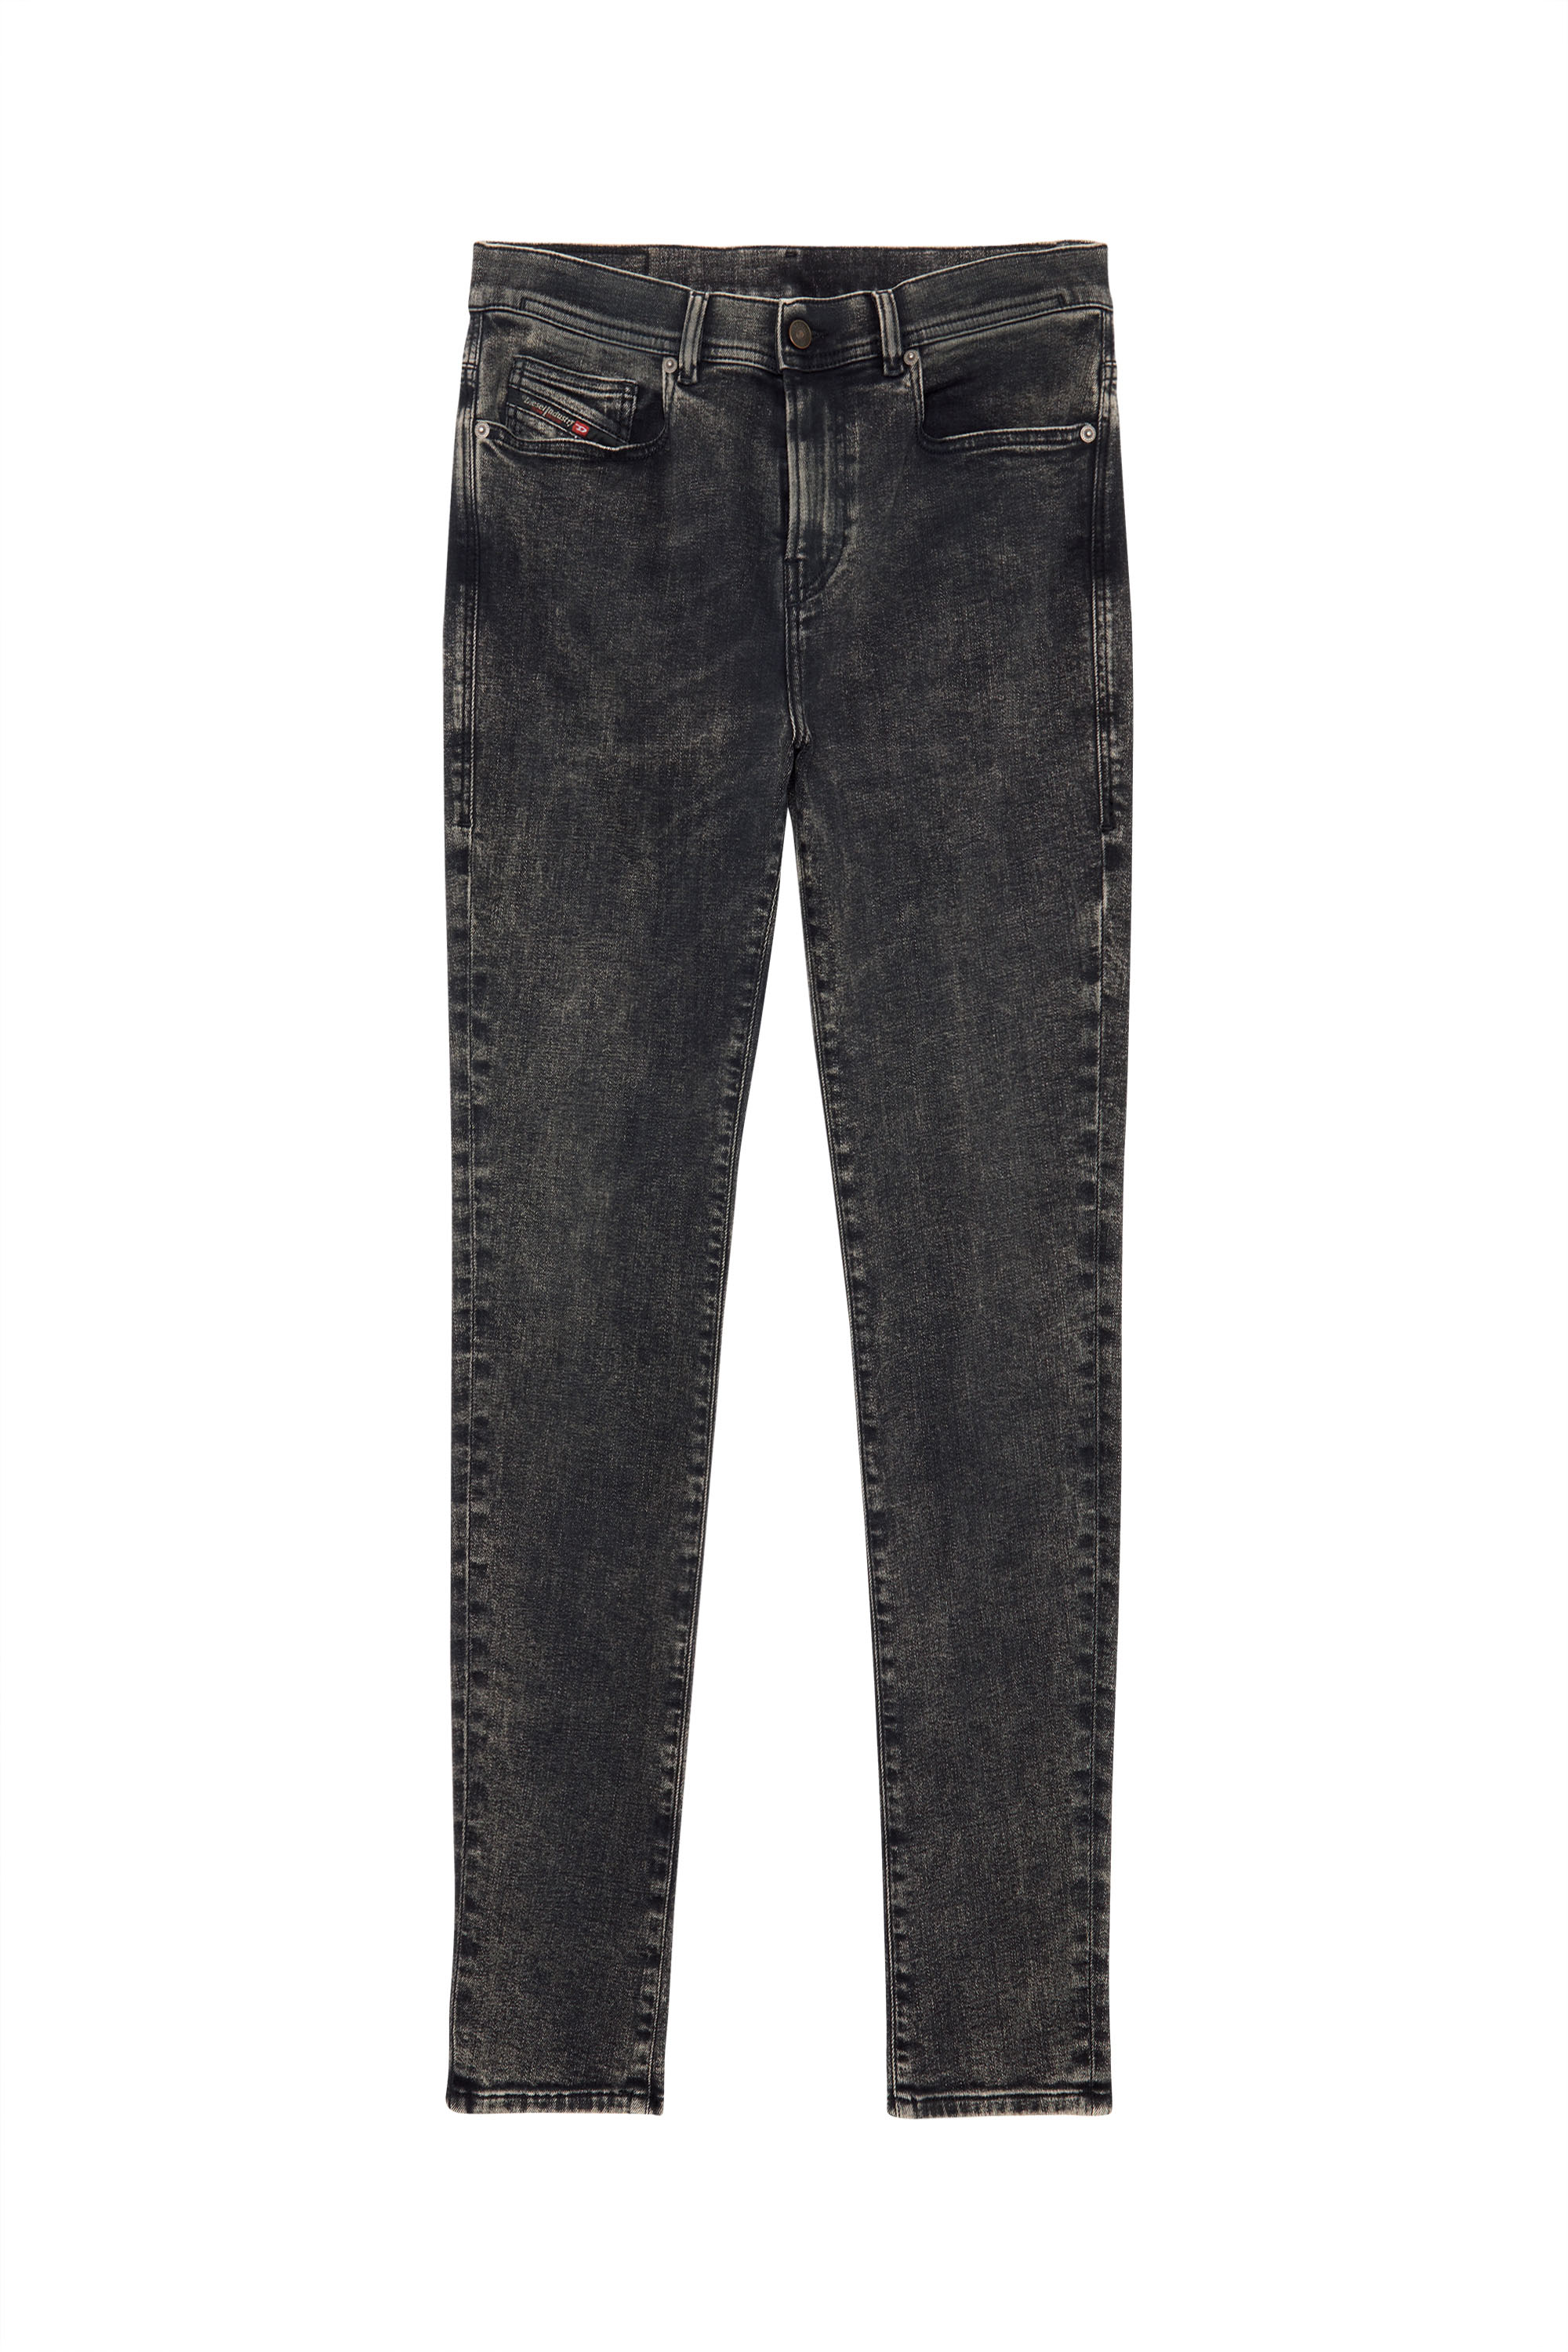 1983 D-Amny 09C22 Skinny Jeans, Black/Dark grey - Jeans